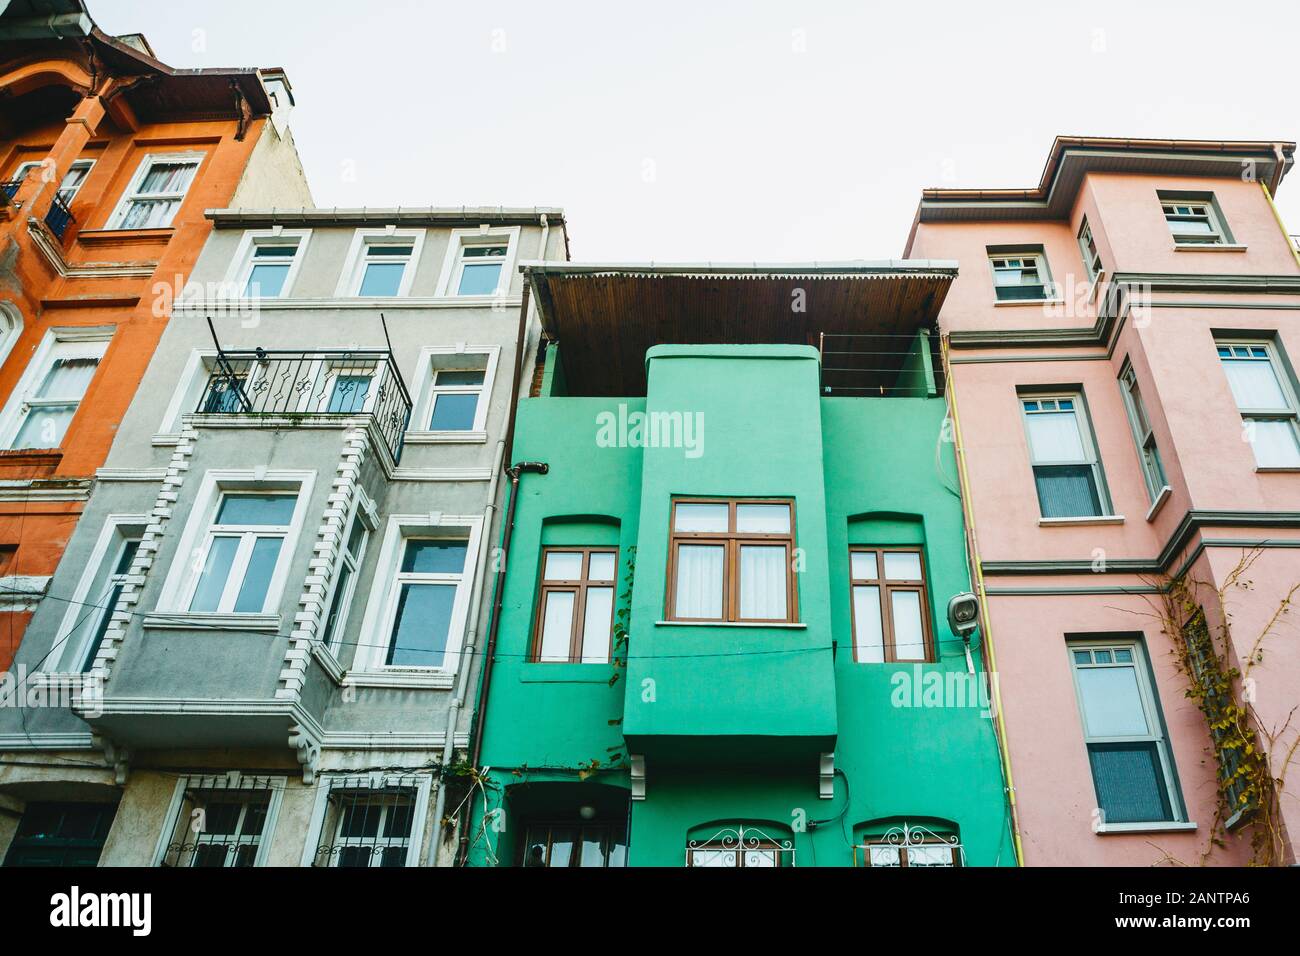 Alte traditionelle Apartment Gebäude in der balat Bezirk von Istanbul in der Türkei. Die Häuser in diesem Bereich wurden im 15-18 Jahrhundert gebaut, nicht später. Stockfoto